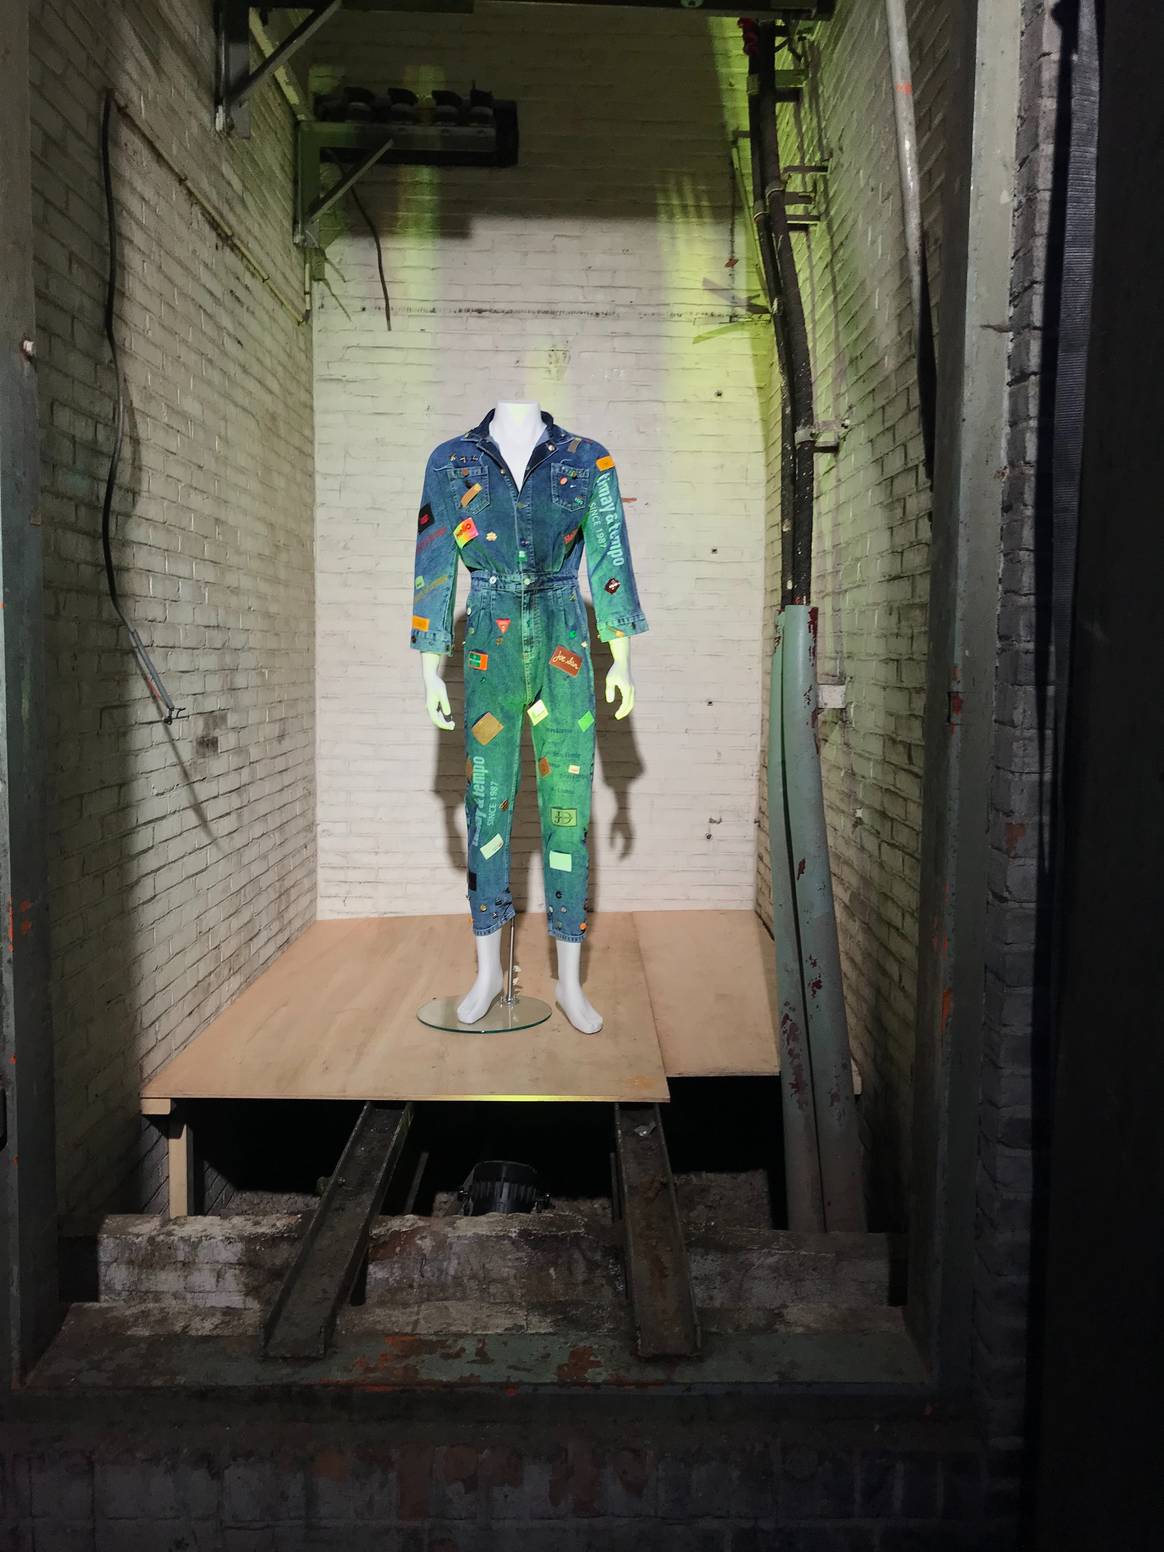 Een van de looks die Kingpins aanbiedt ter inspiratie voor diverse afwerkingen van kledingstukken. Beeld door FashionUnited/Caitlyn Terra